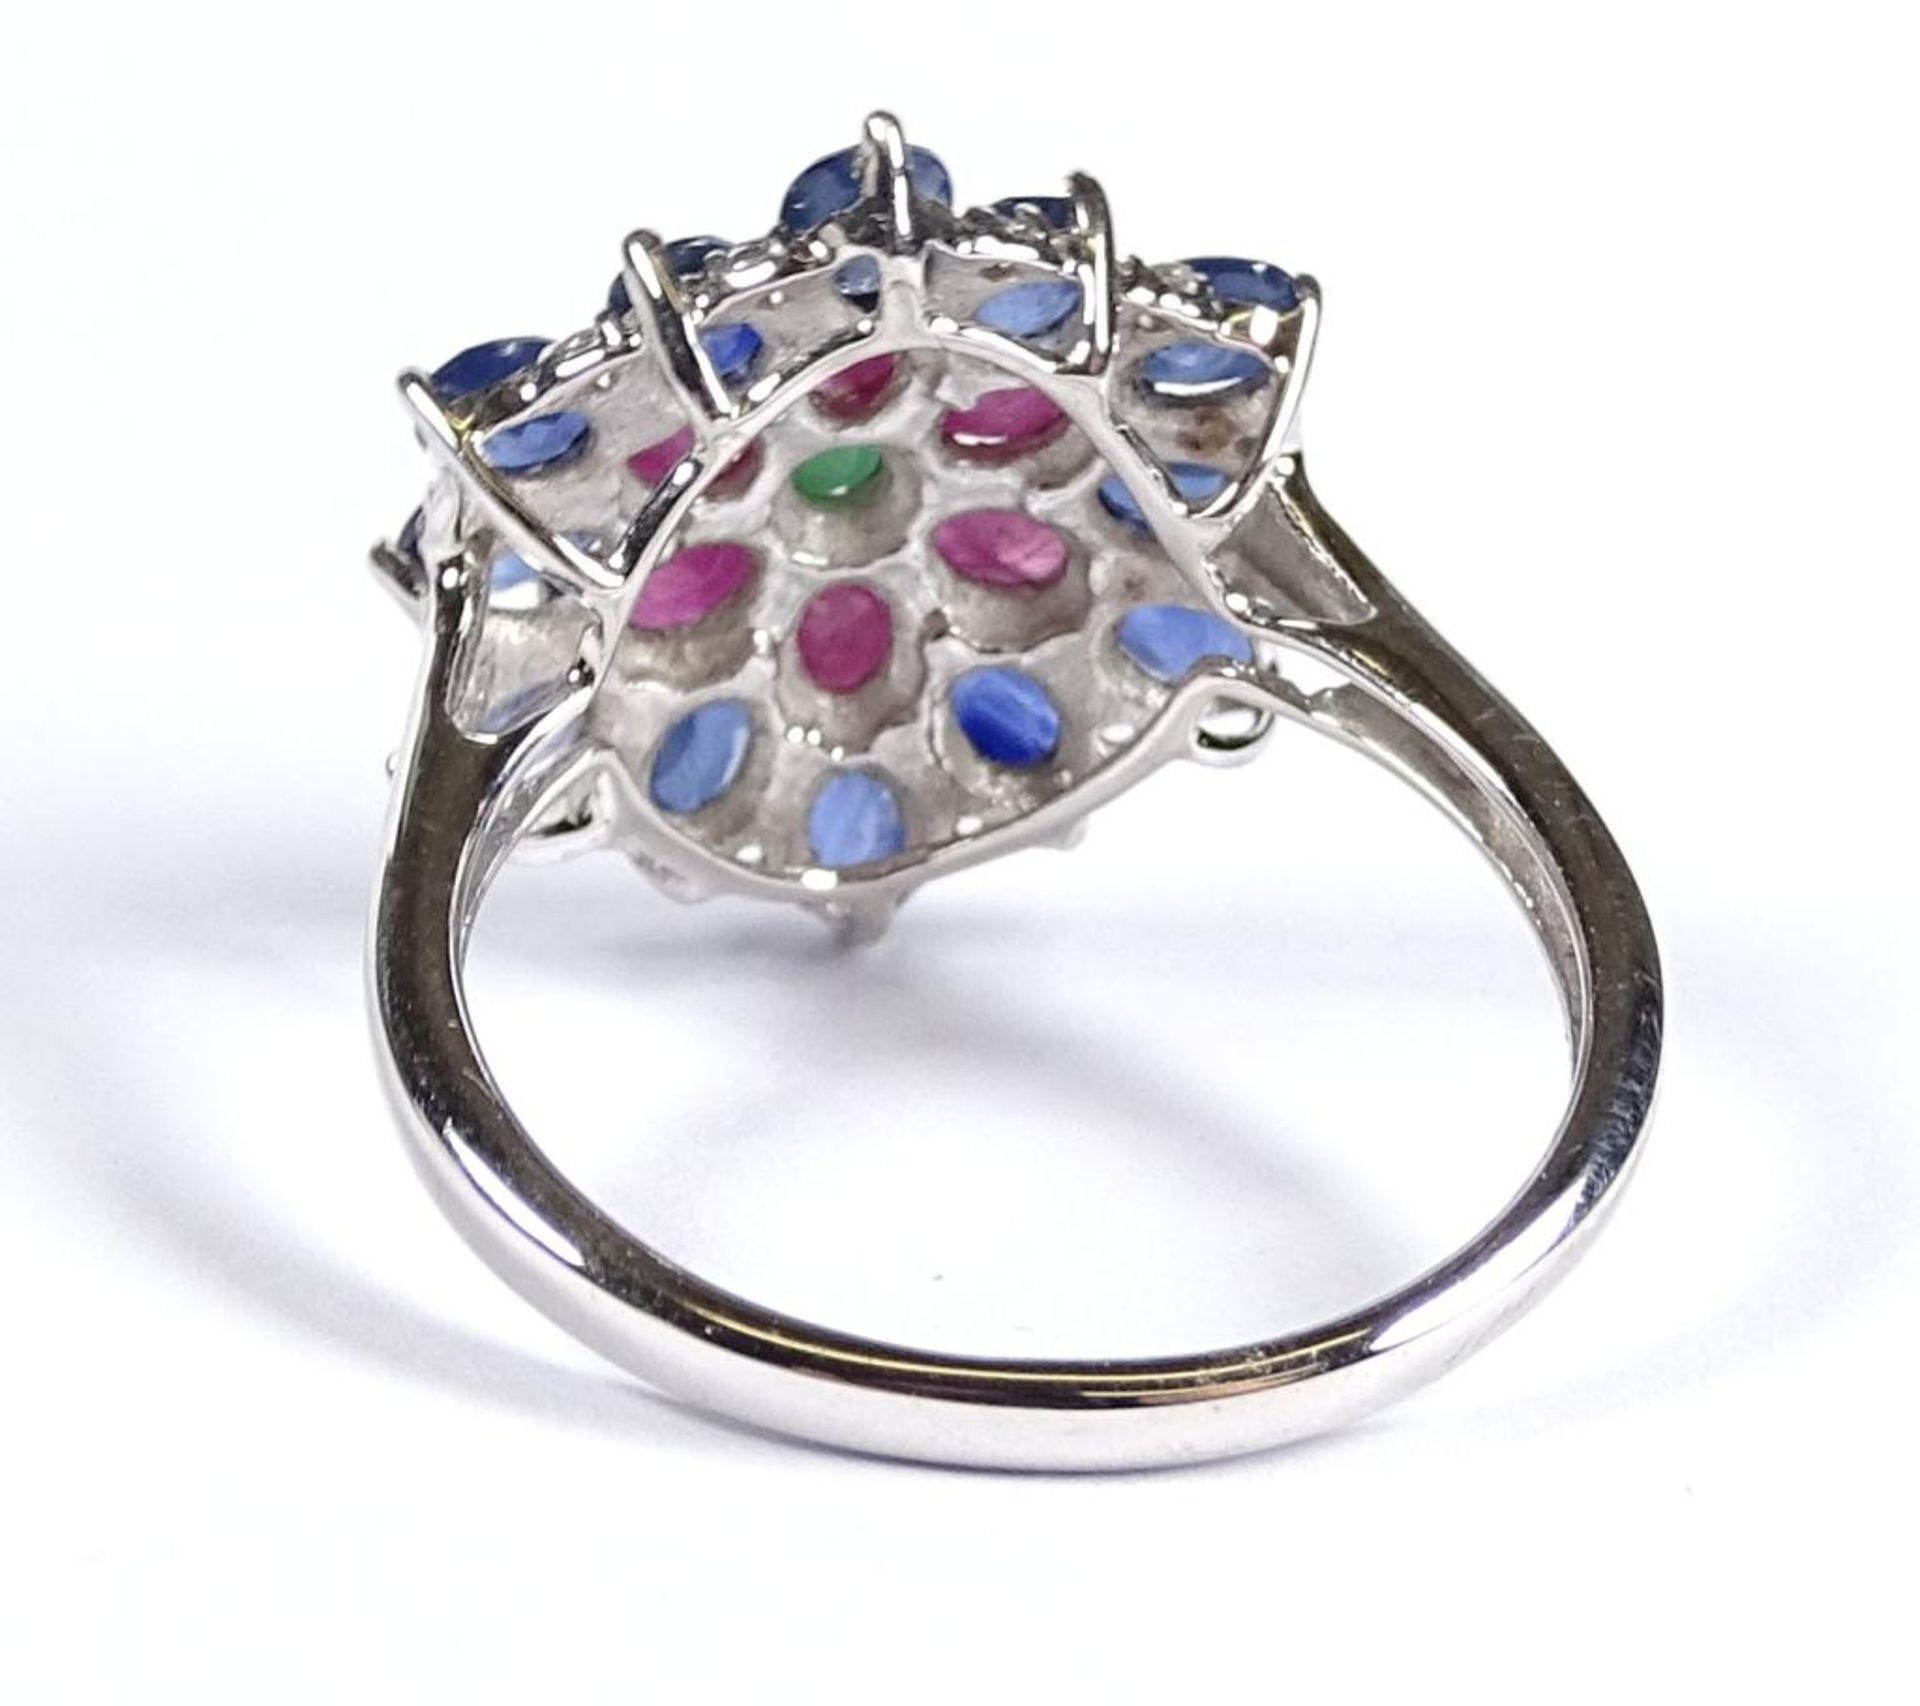 Ring,Silber -925-,Rubine,Saphire und Smaragd,3,9gr.RG 59/60 - Bild 3 aus 3